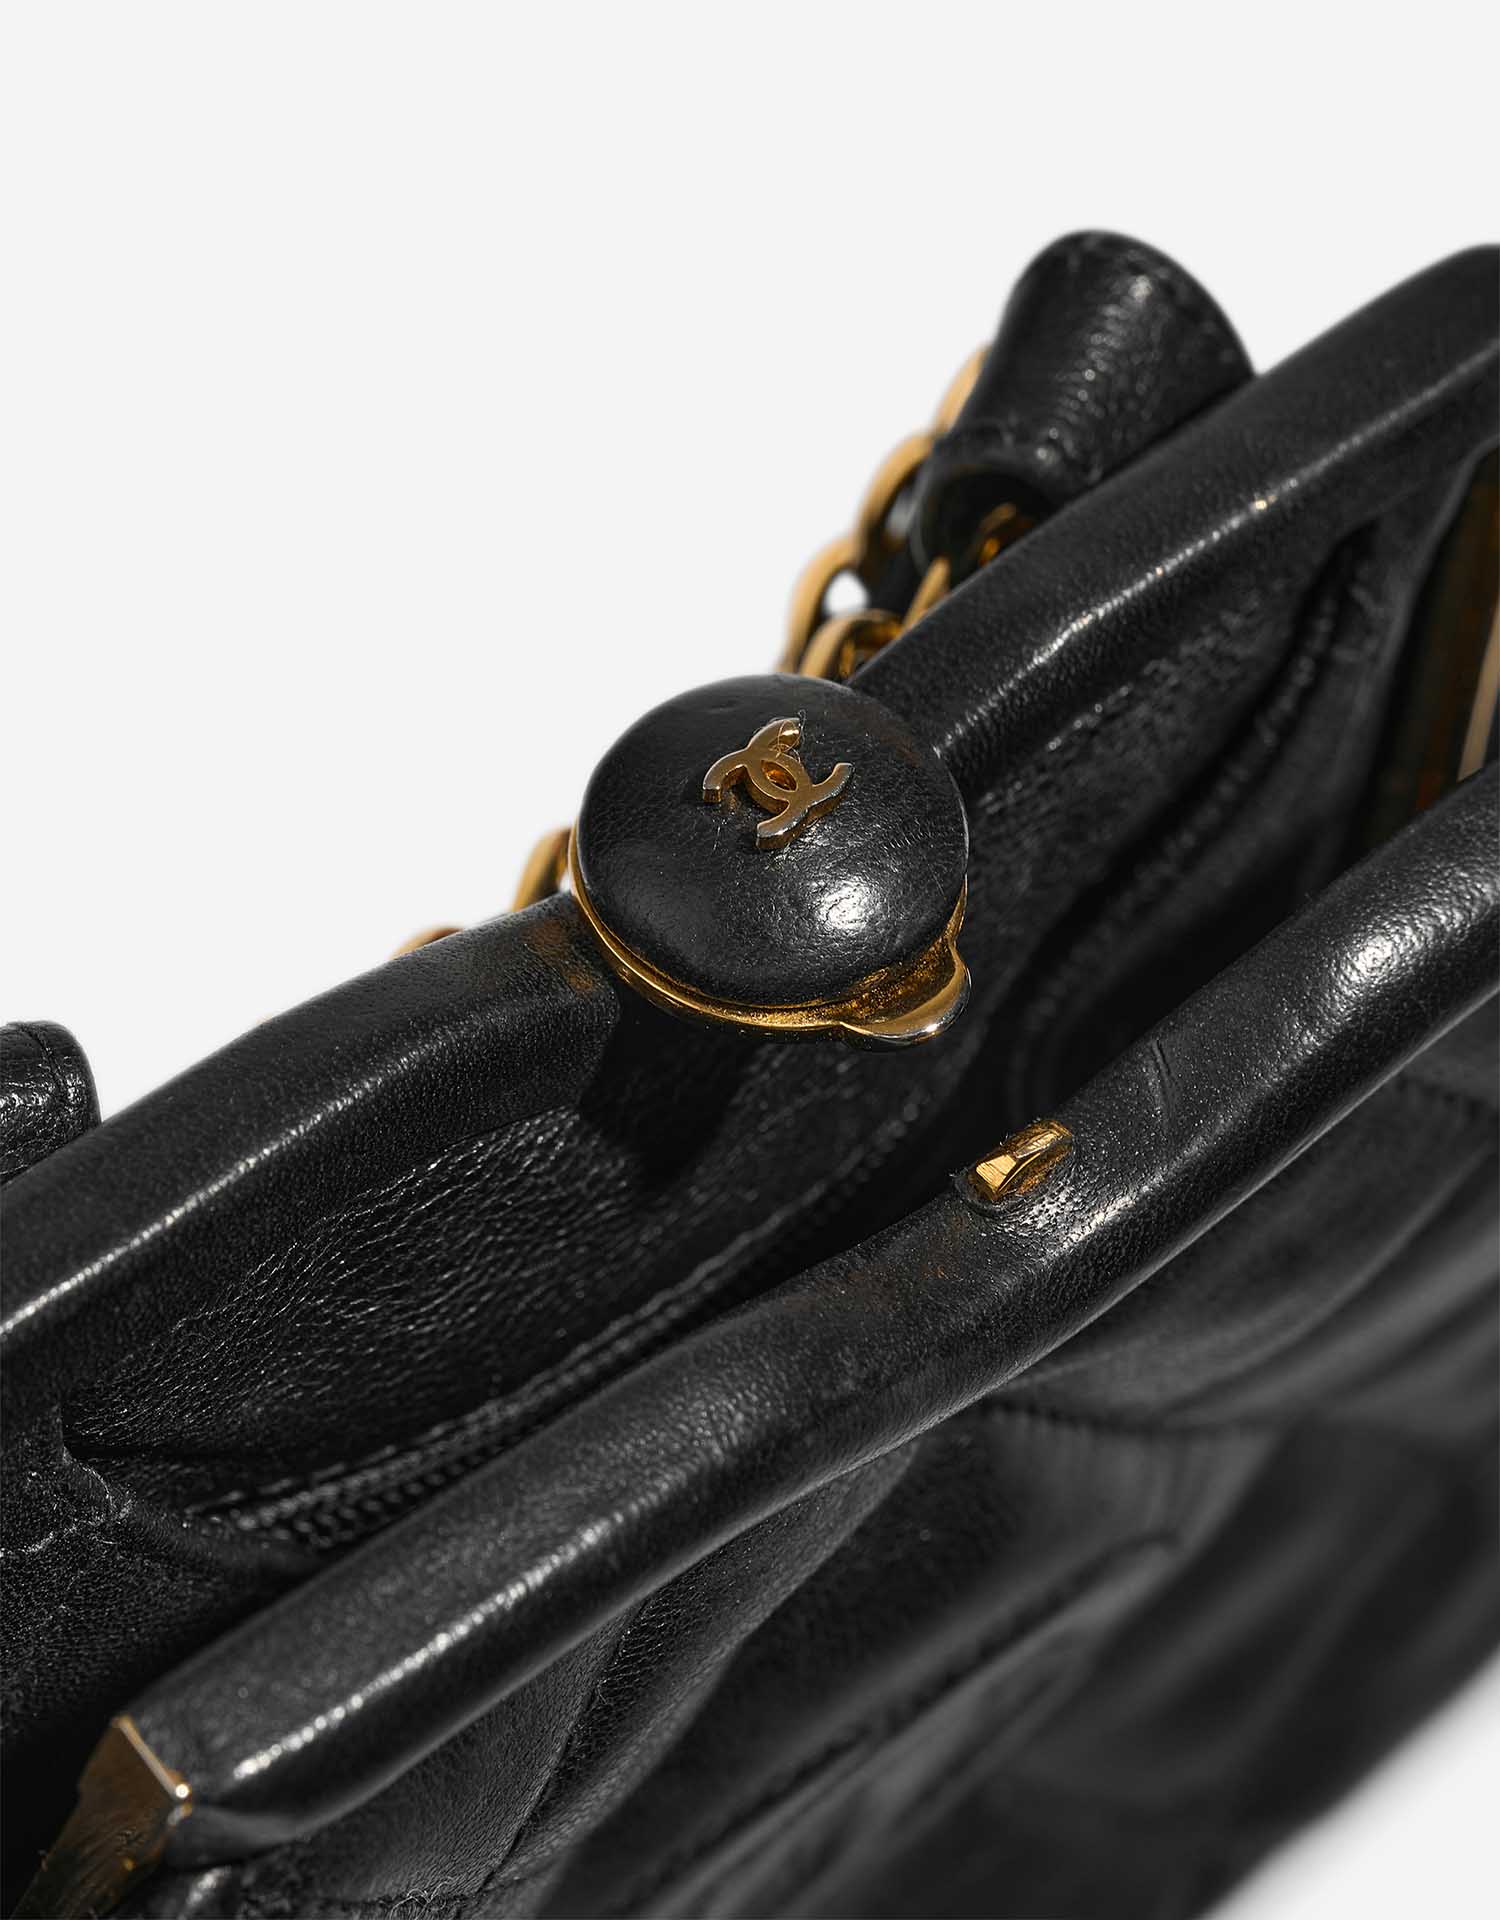 Chanel TimelessBeltBag OneSize Black Verschluss-System | Verkaufen Sie Ihre Designer-Tasche auf Saclab.com